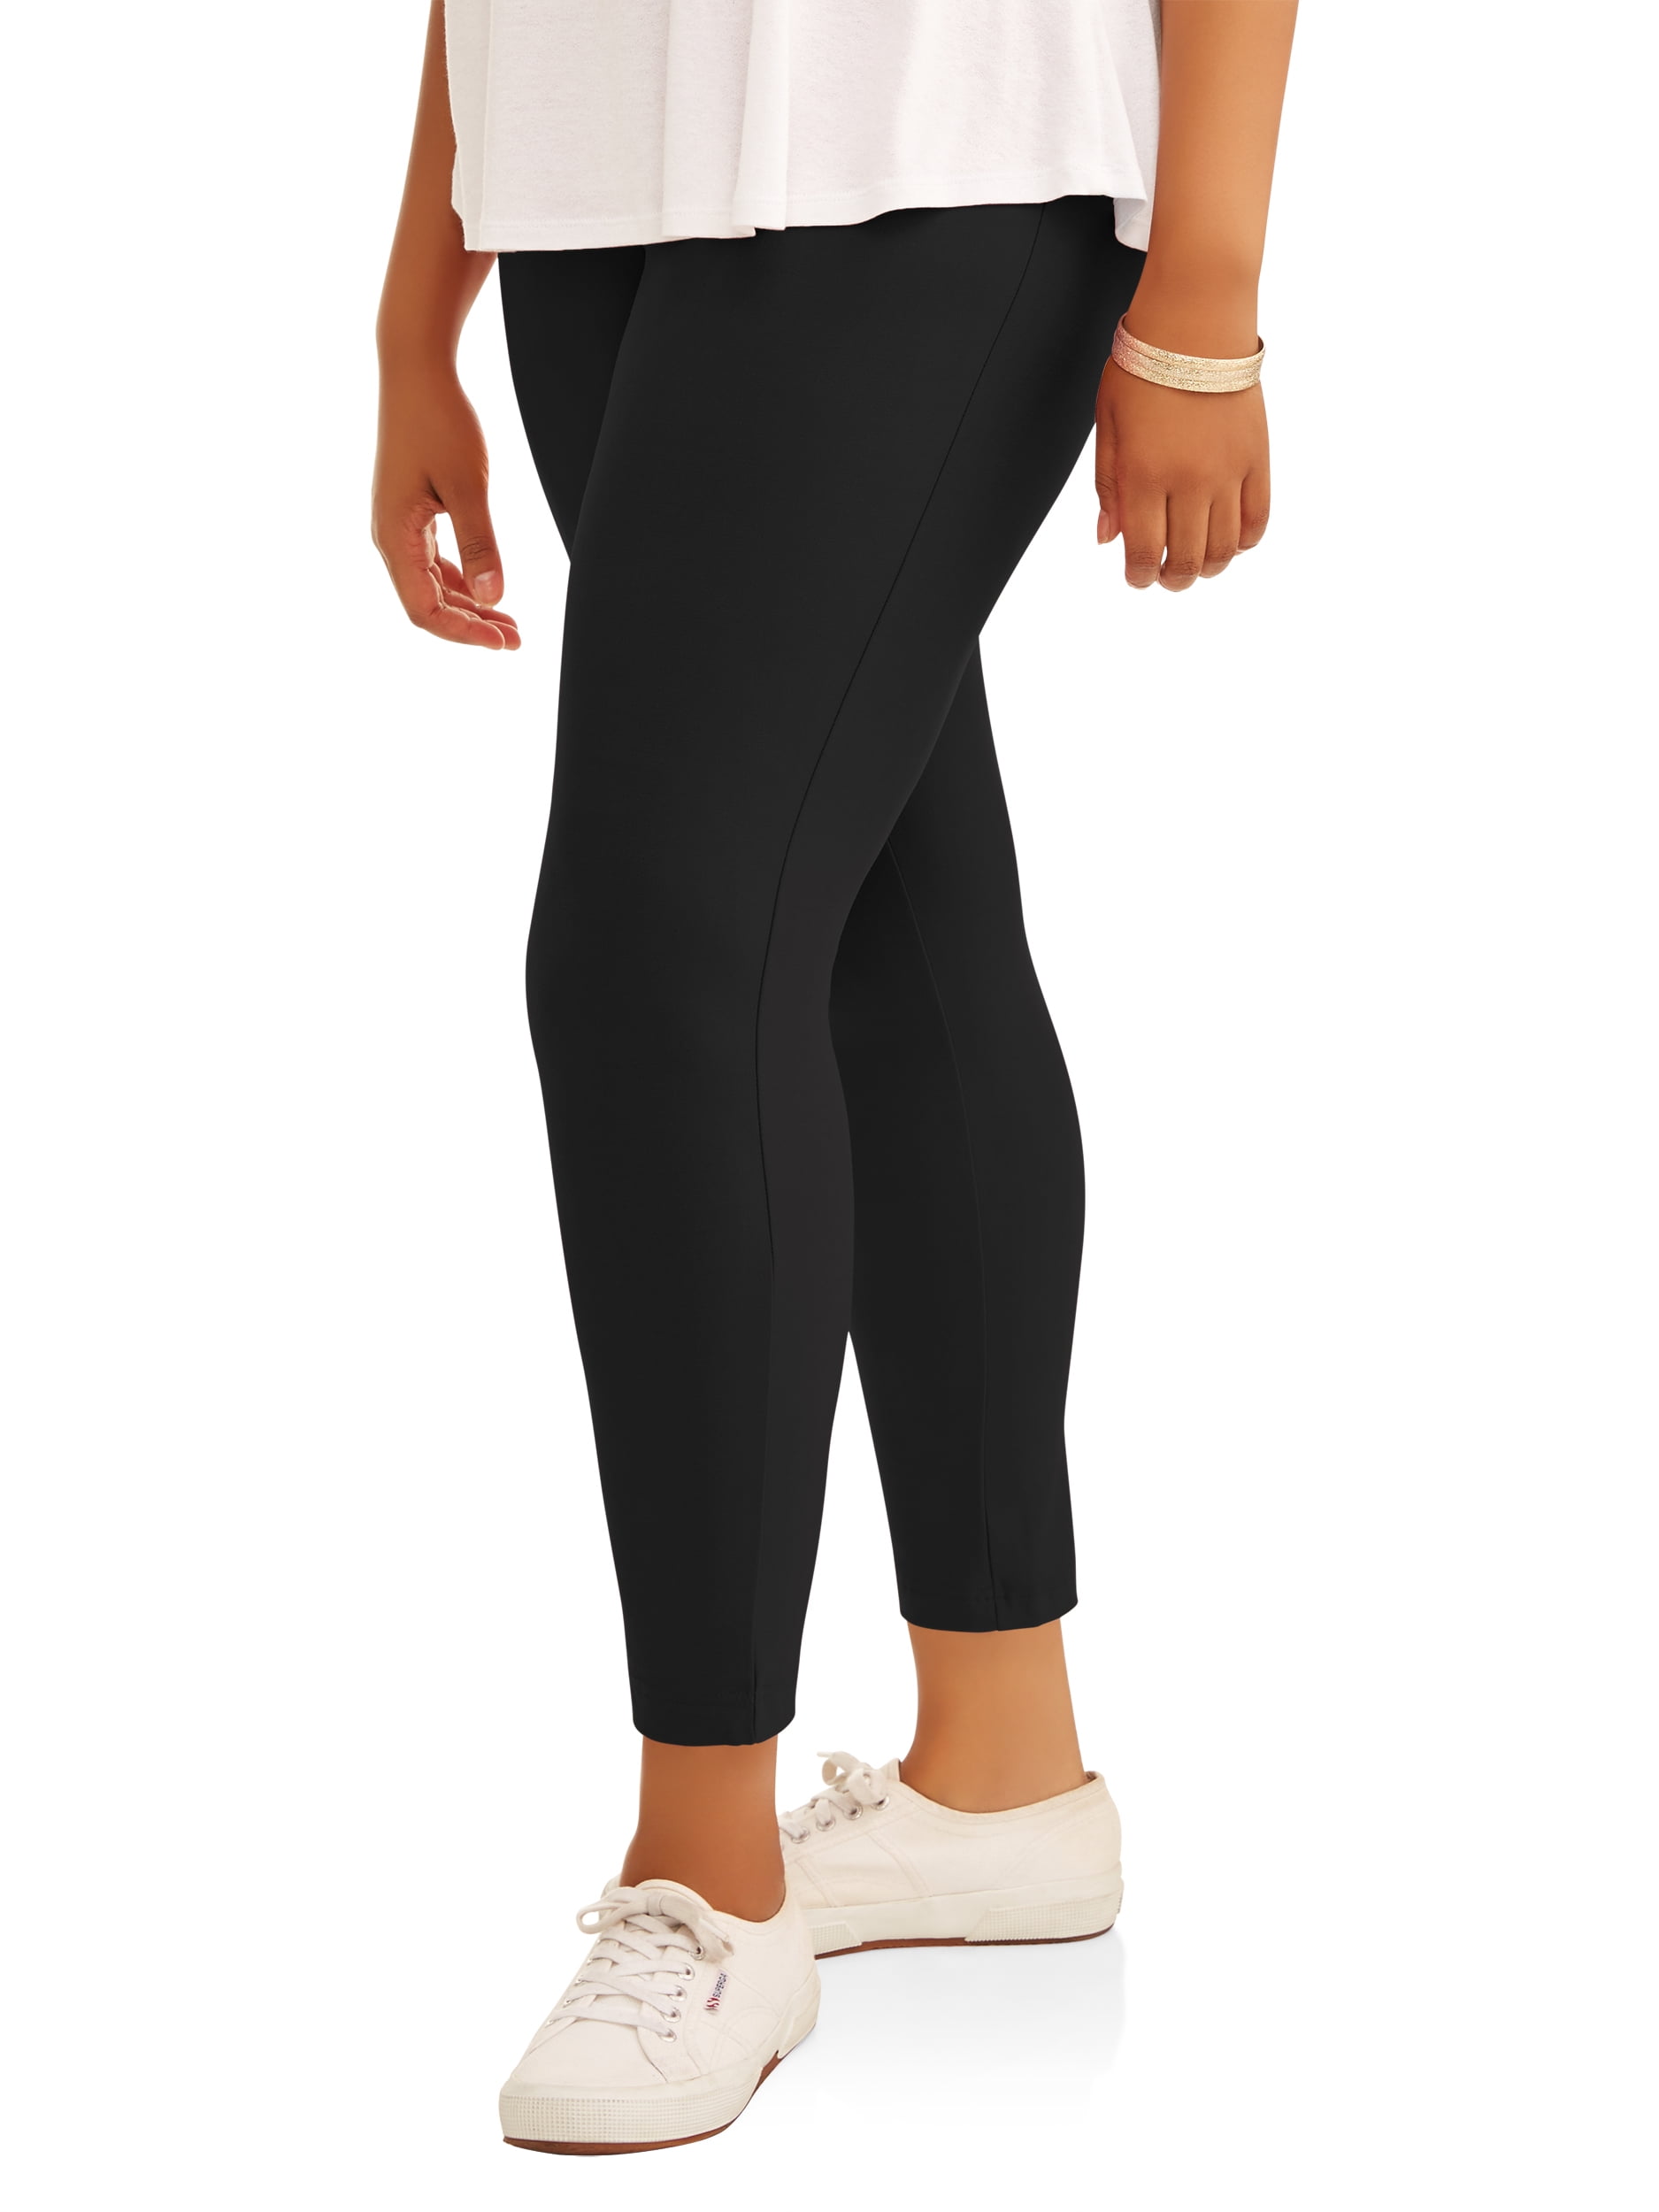 Terra & Sky Women's Plus Size Super Soft Elastic Waistband Full Length  Legging 